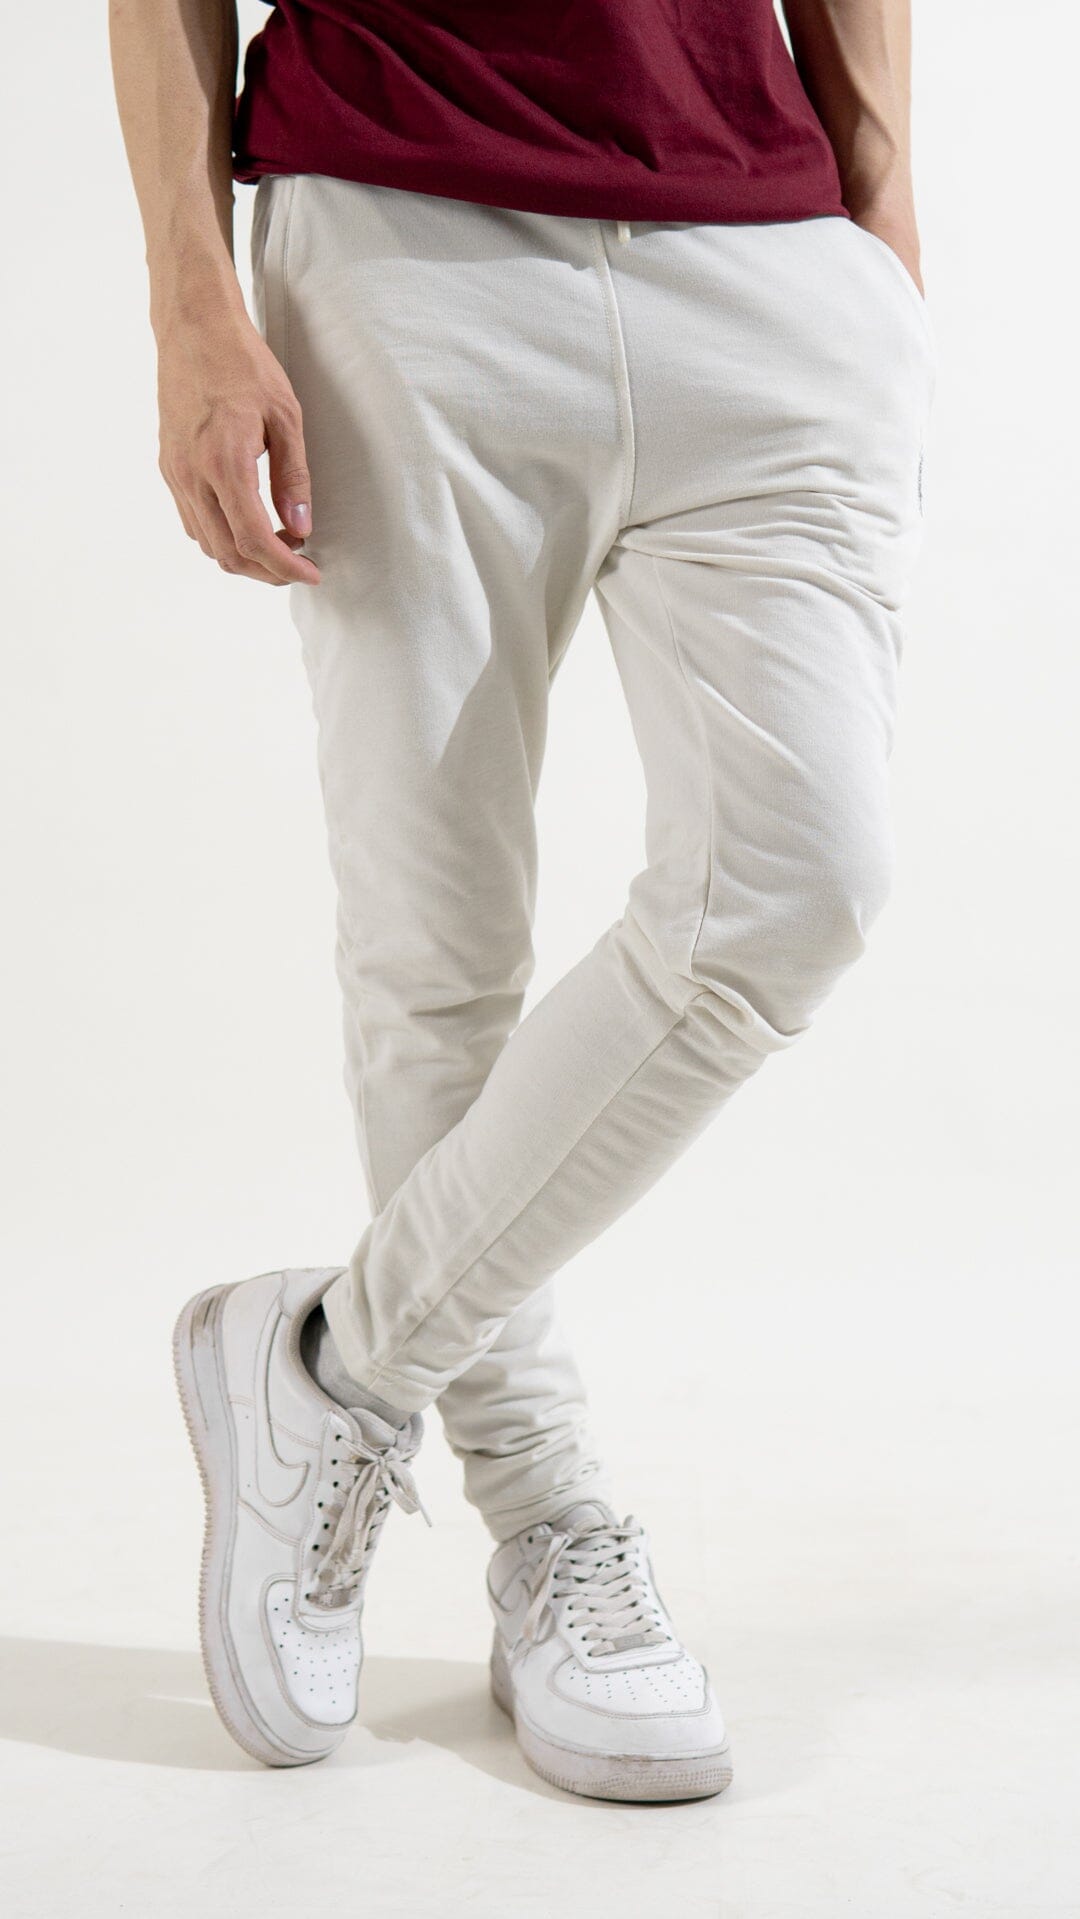 Polo Republica Men's Essentials Slim-Fit Joggers Men's Trousers Polo Republica Off White S 